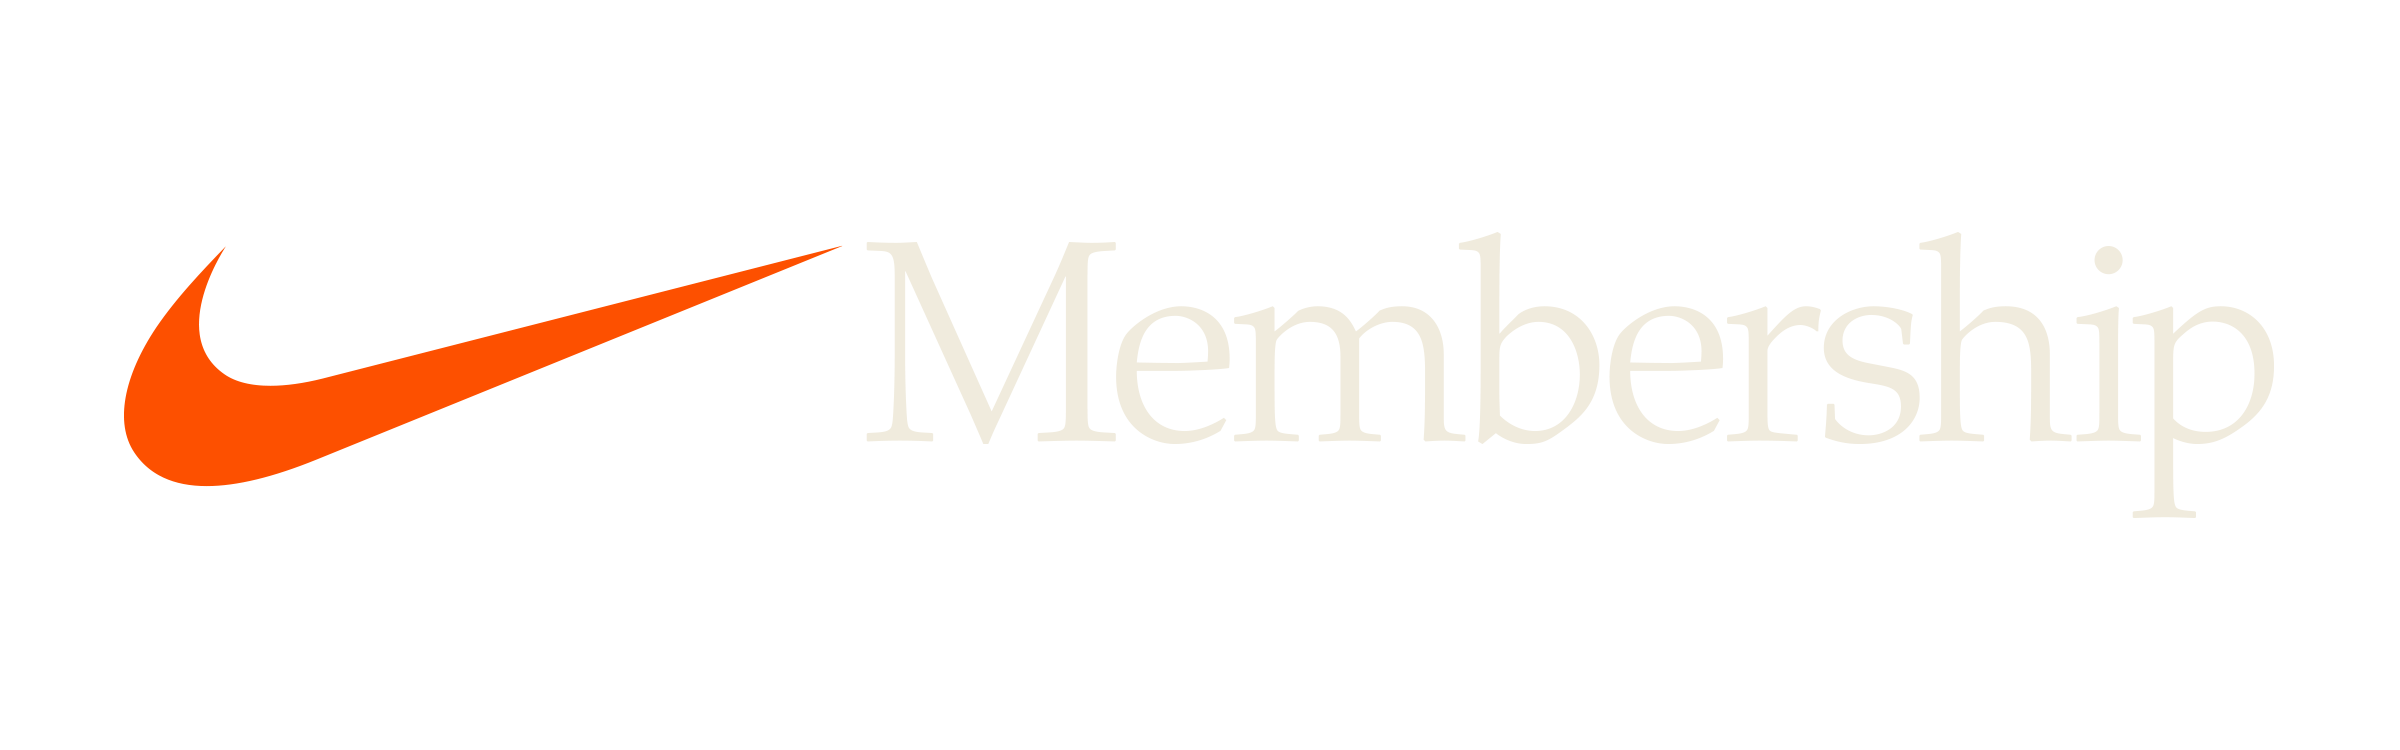 Membership - Brian Metcalf